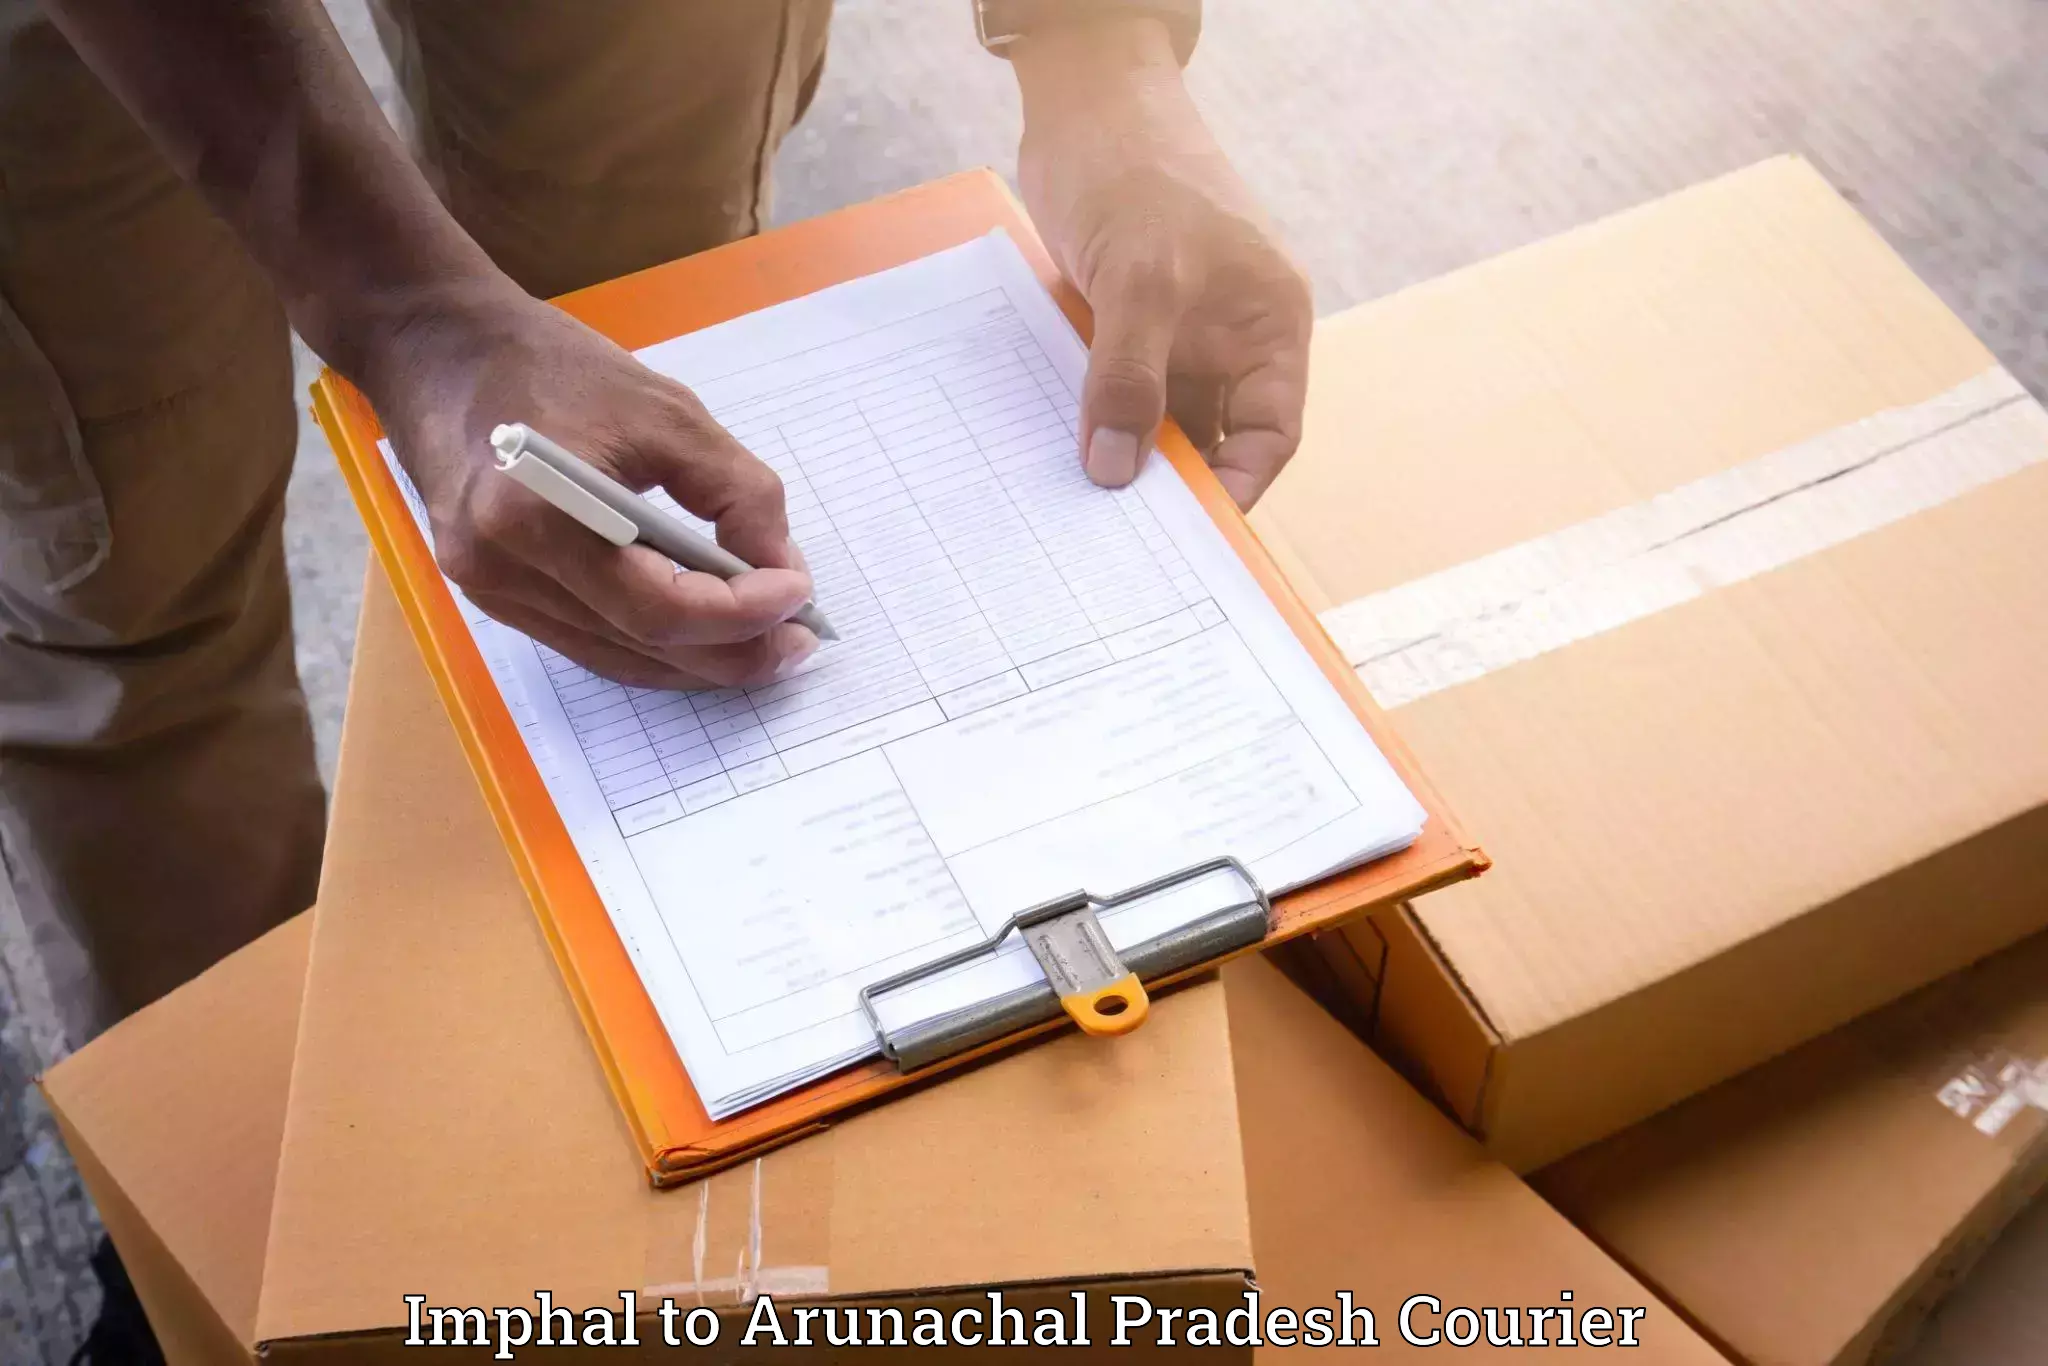 Furniture moving service in Imphal to Arunachal Pradesh